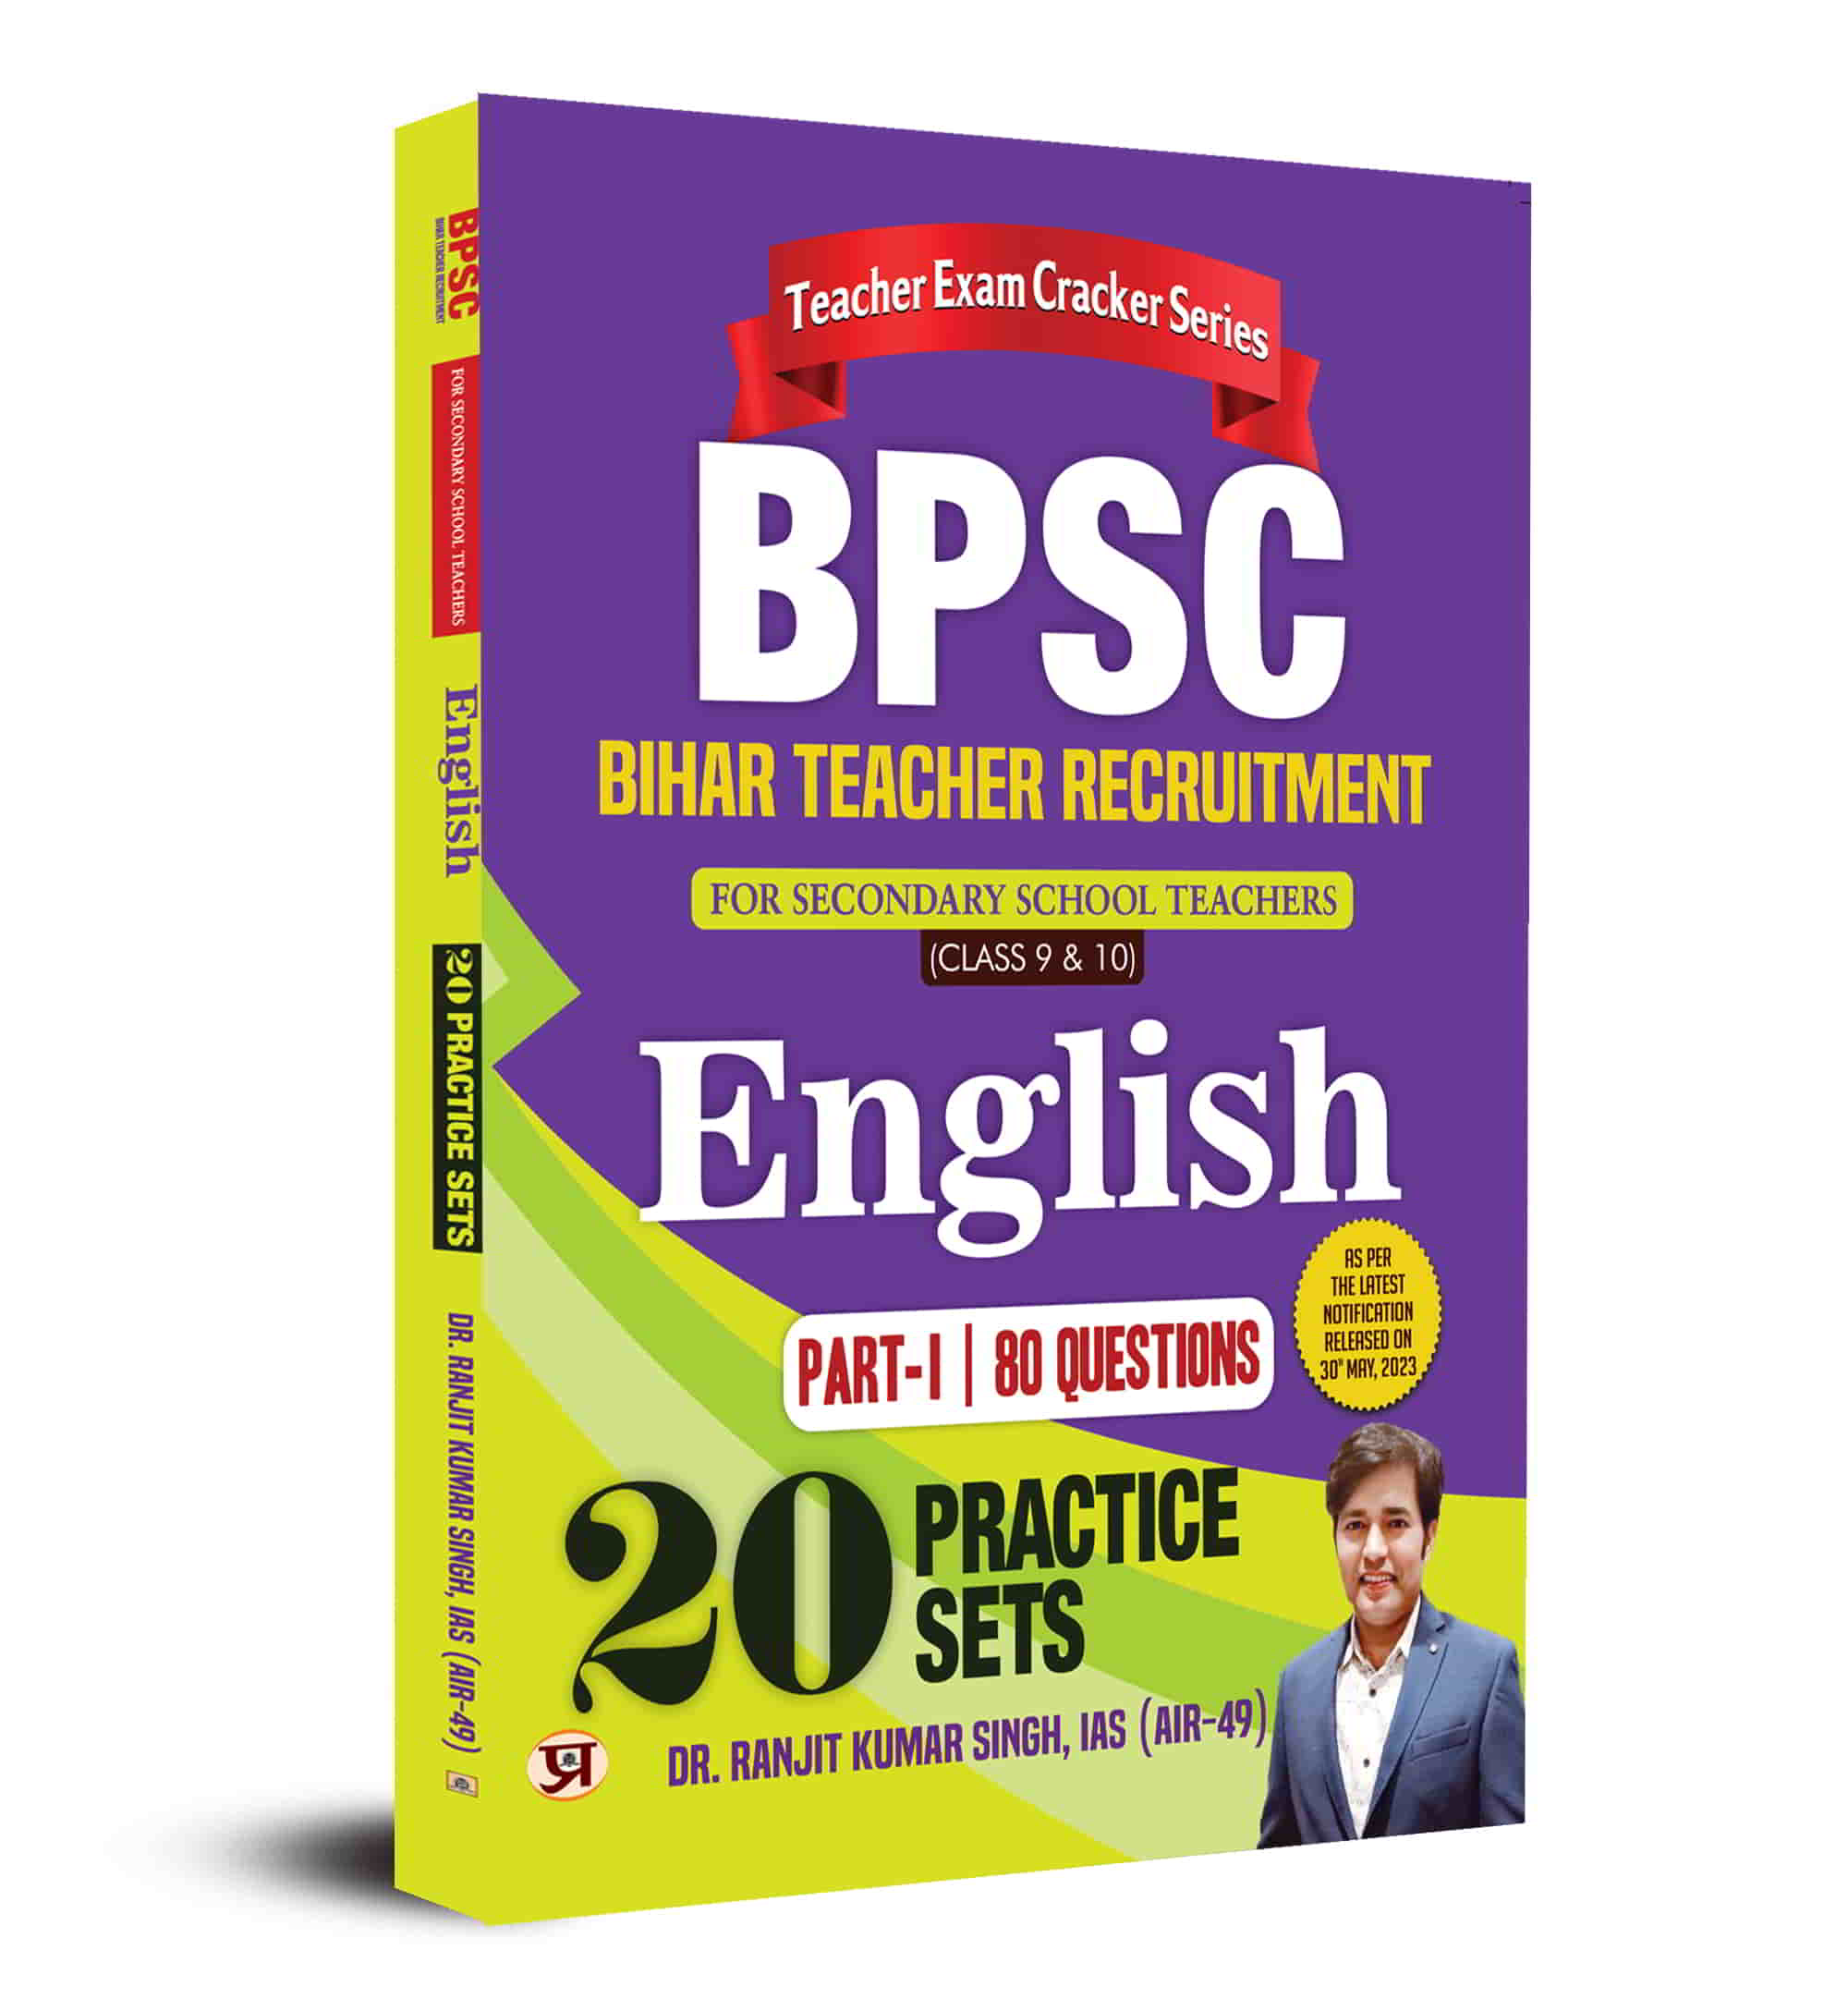 English Subject 20 Practice Sets For BPSC Bihar Teacher Recruitment Bo...